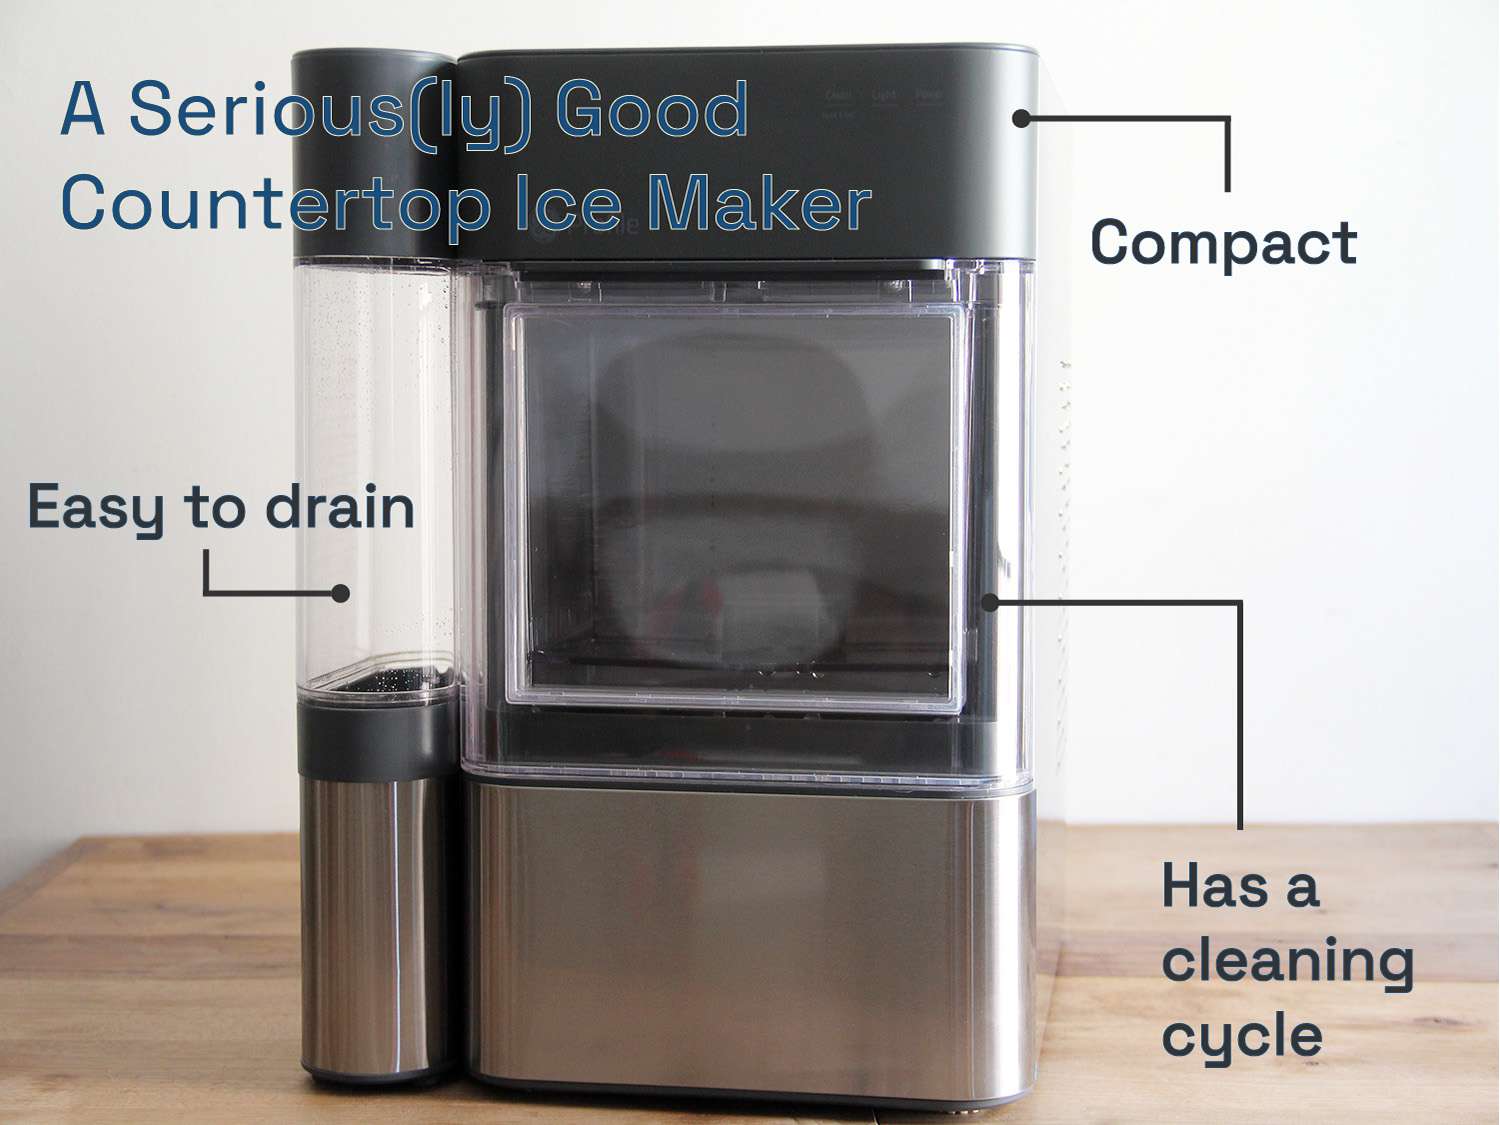 一个非常好的台面制冰机:紧凑，易于排水，并有一个清洁周期